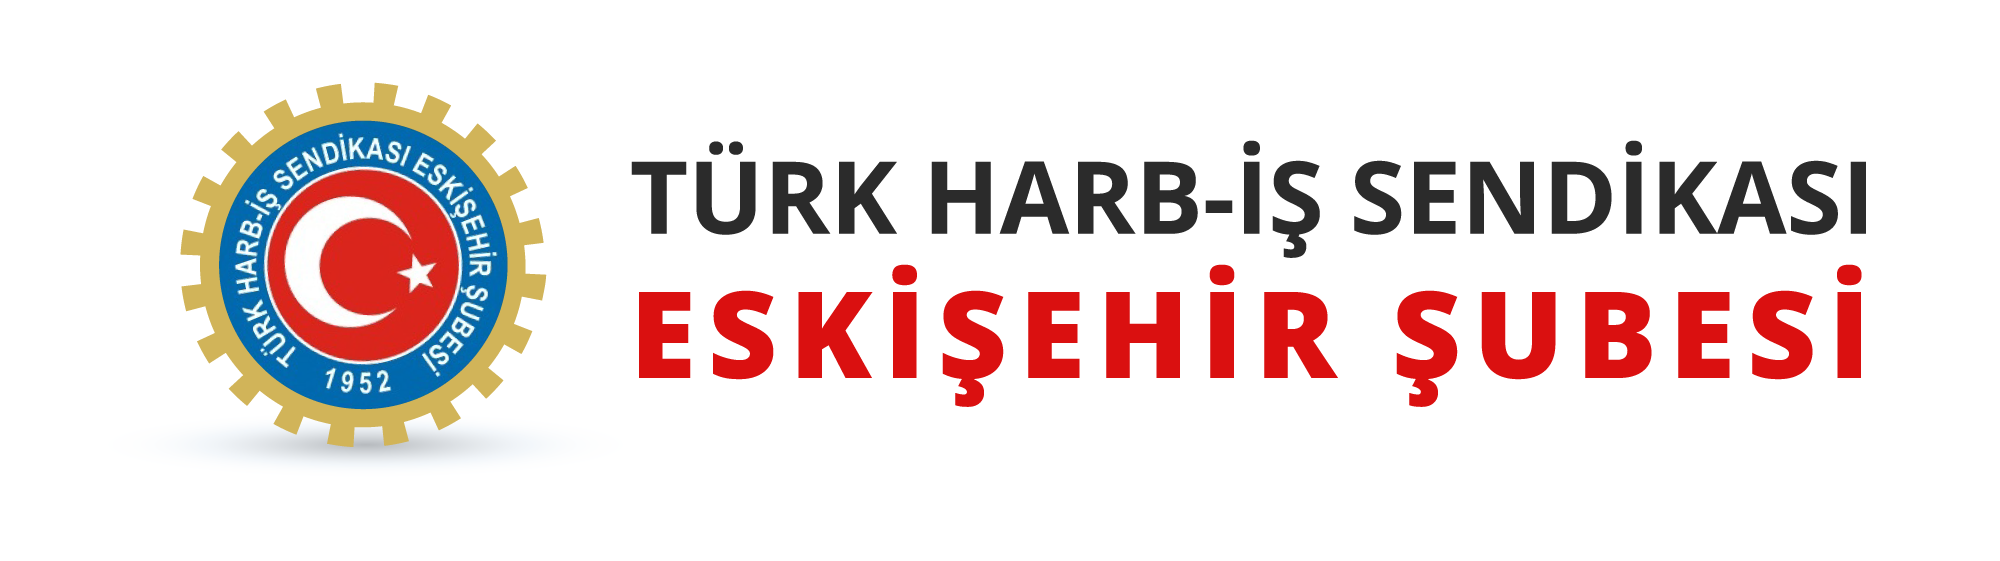 Türk Harb-İş Eskişehir Şubesi